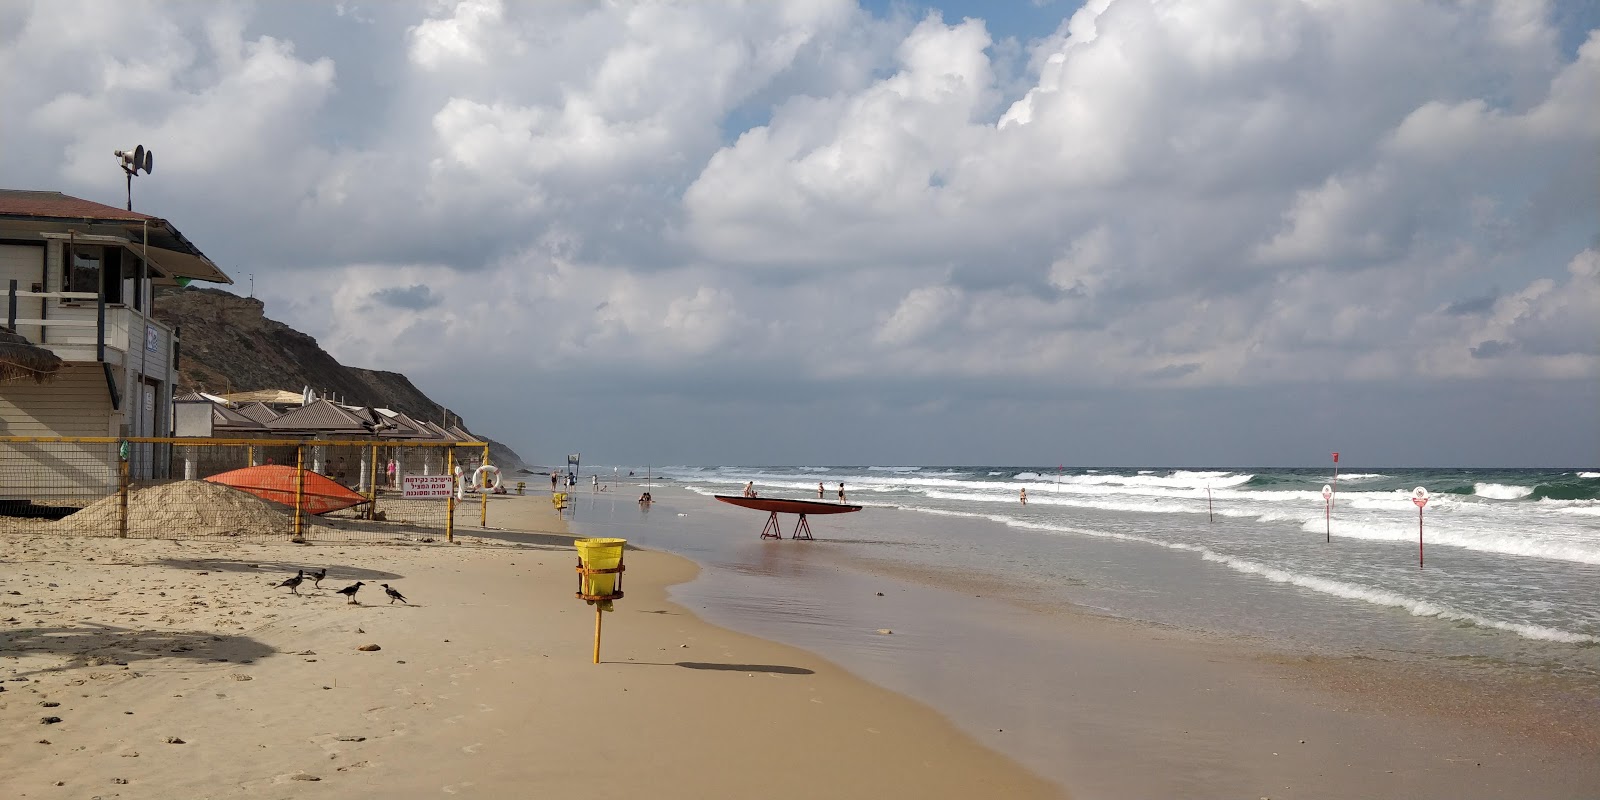 Argaman beach'in fotoğrafı geniş plaj ile birlikte